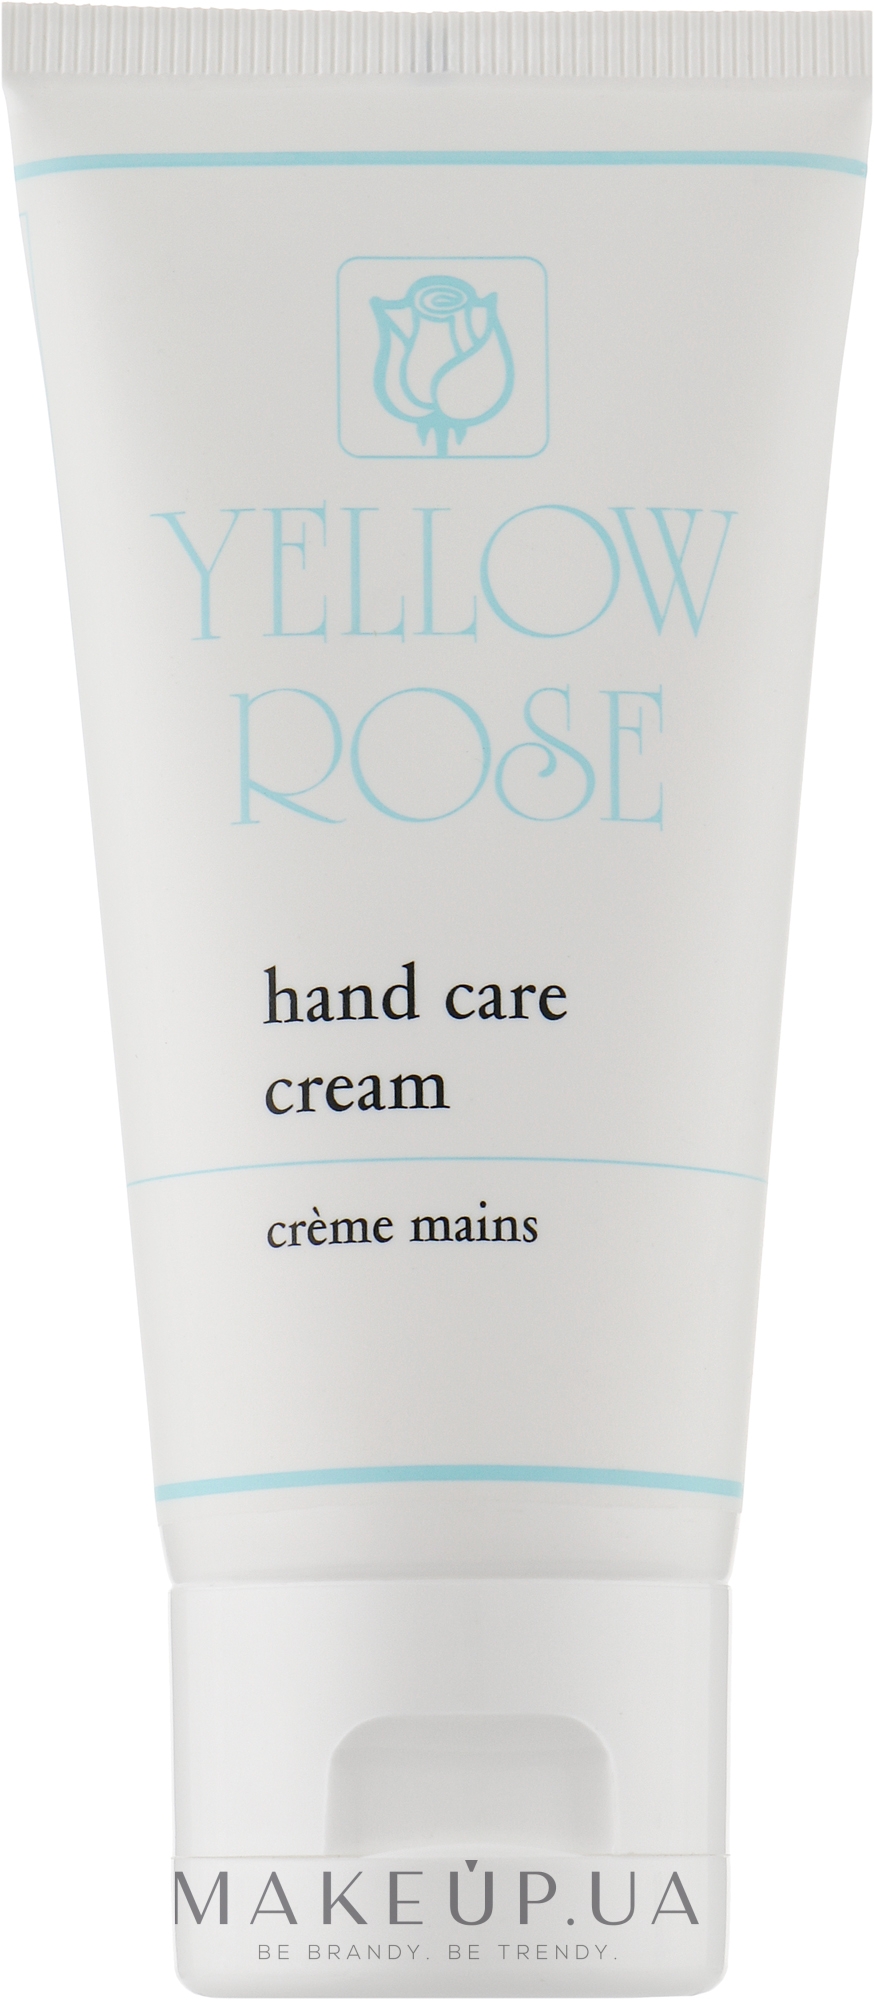 Живильний, зволожувальний і омолоджувальний крем для рук - Yellow Rose Hand Care Cream — фото 50ml